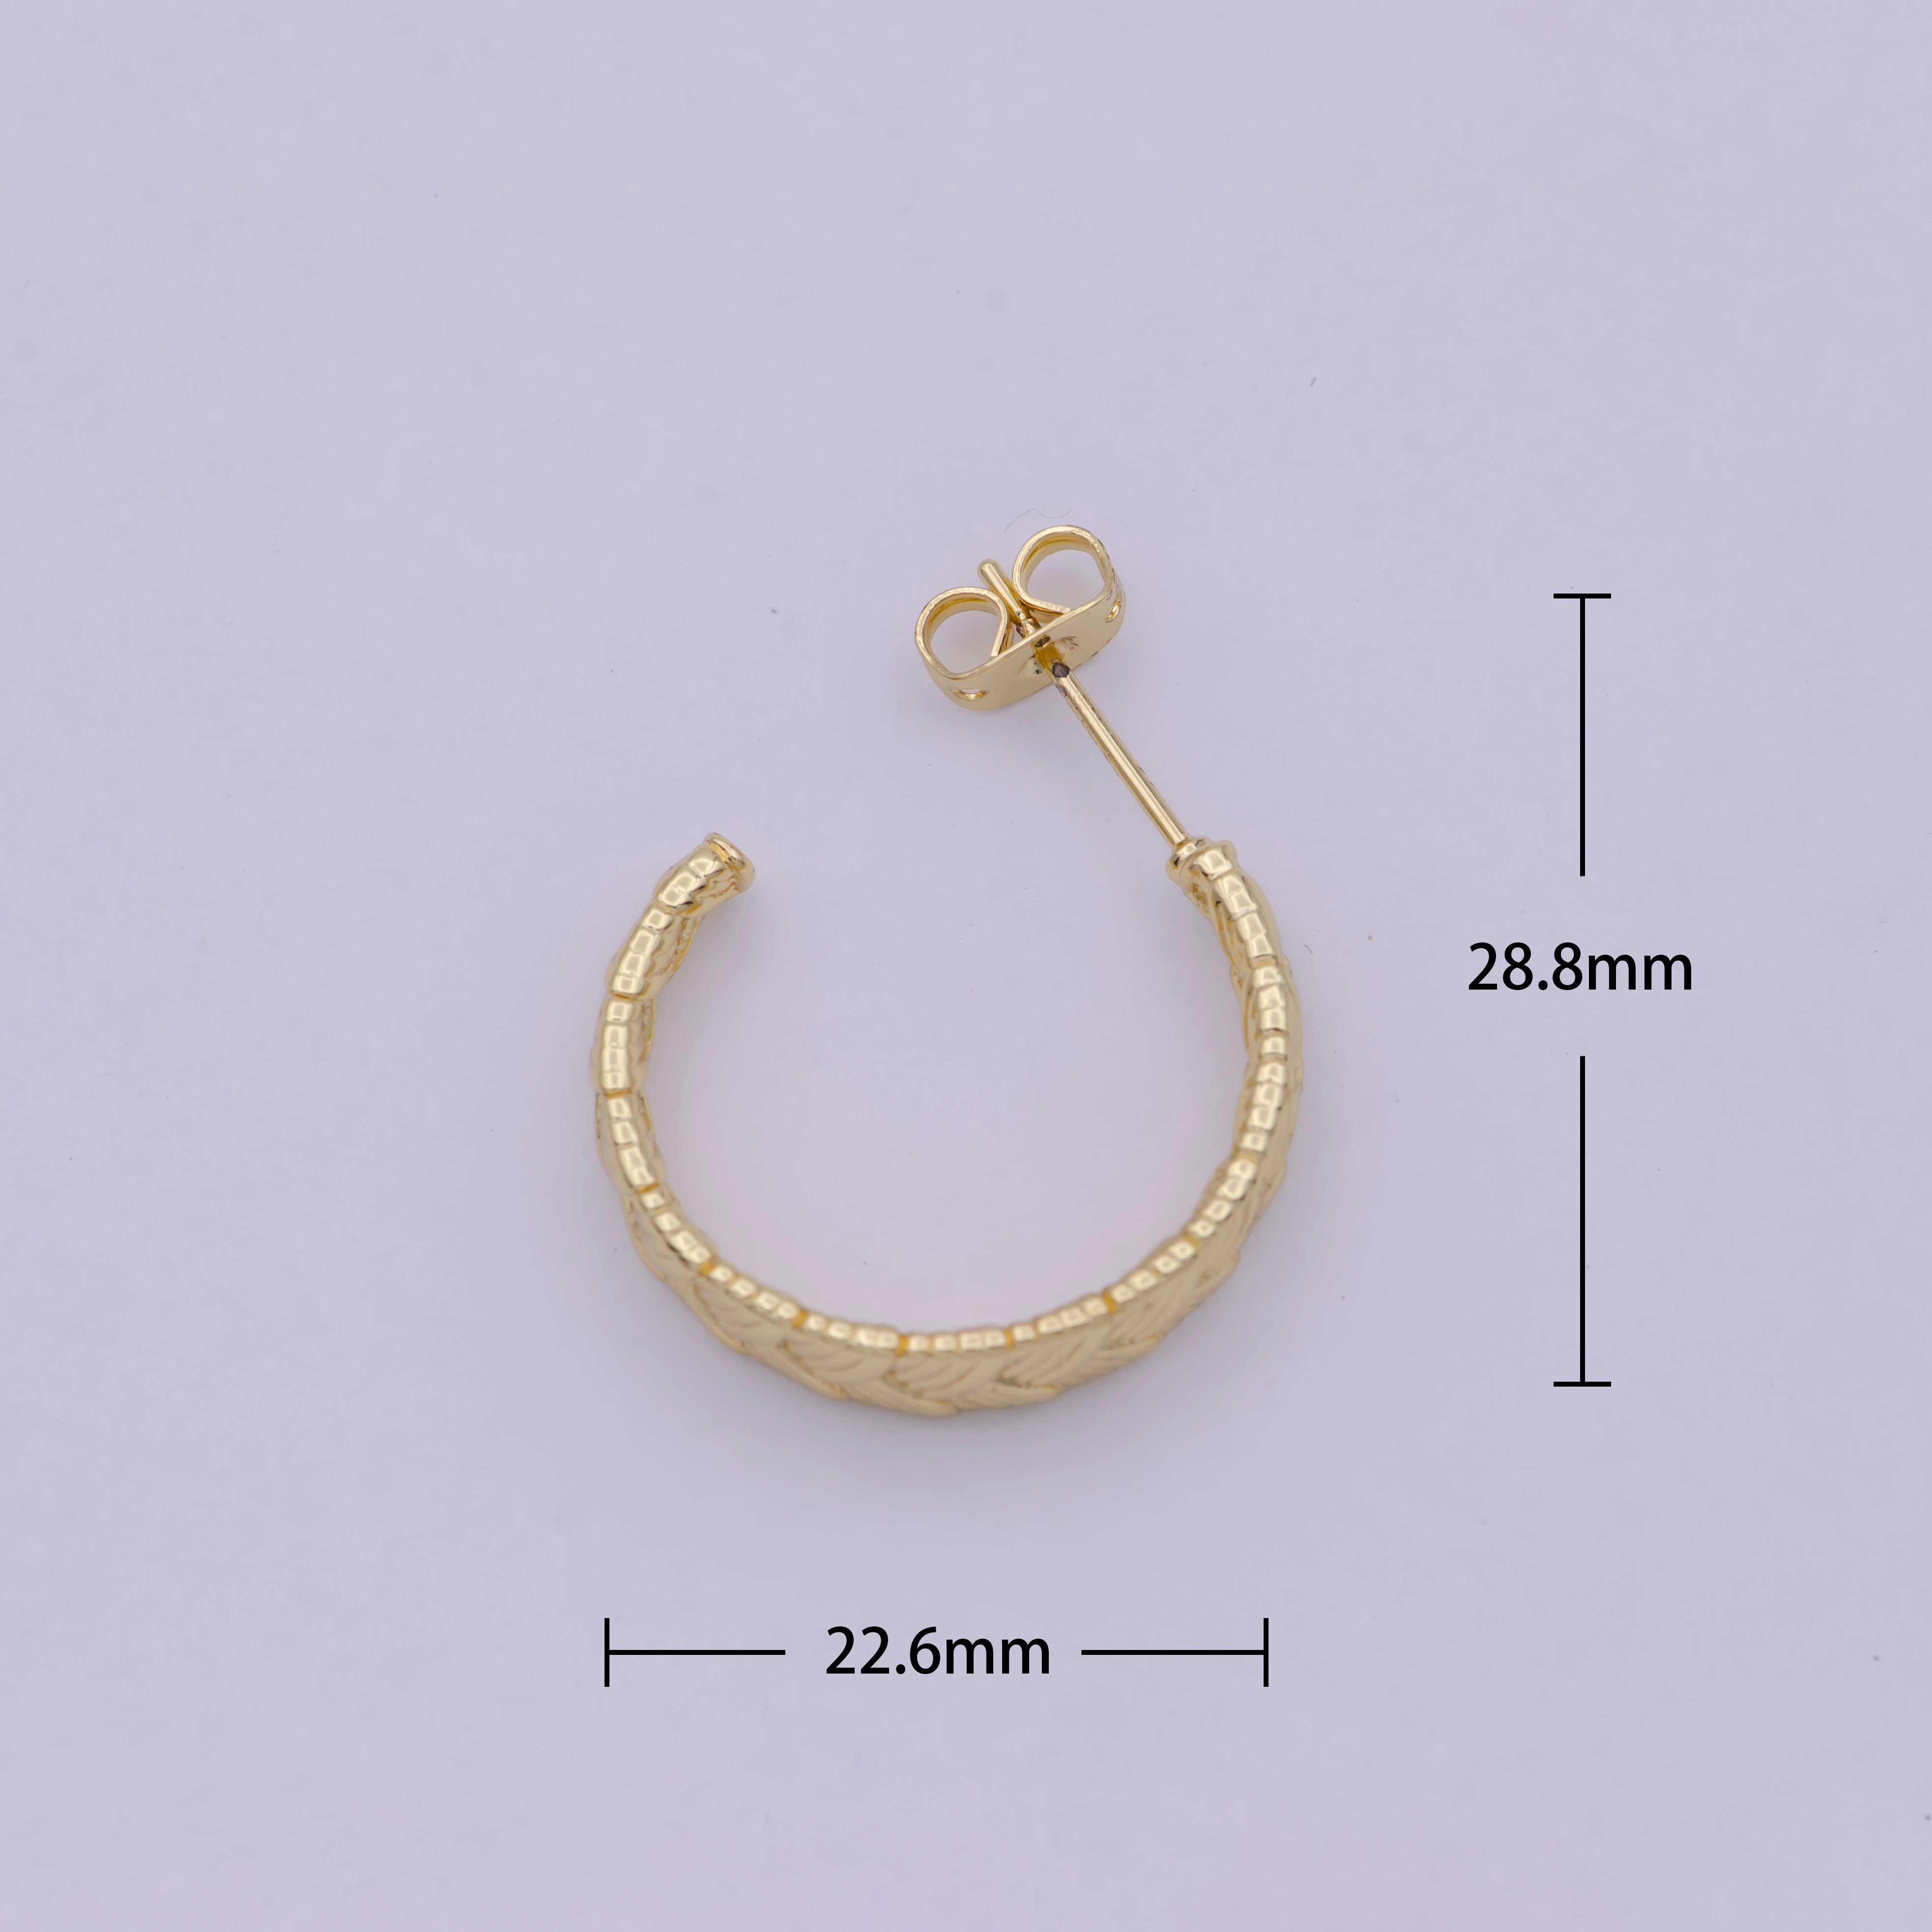 Pair of Gold Braided Minimal Hoop Earrings- Silver Woven Design Minimalist Bohemian Earrings - DLUXCA